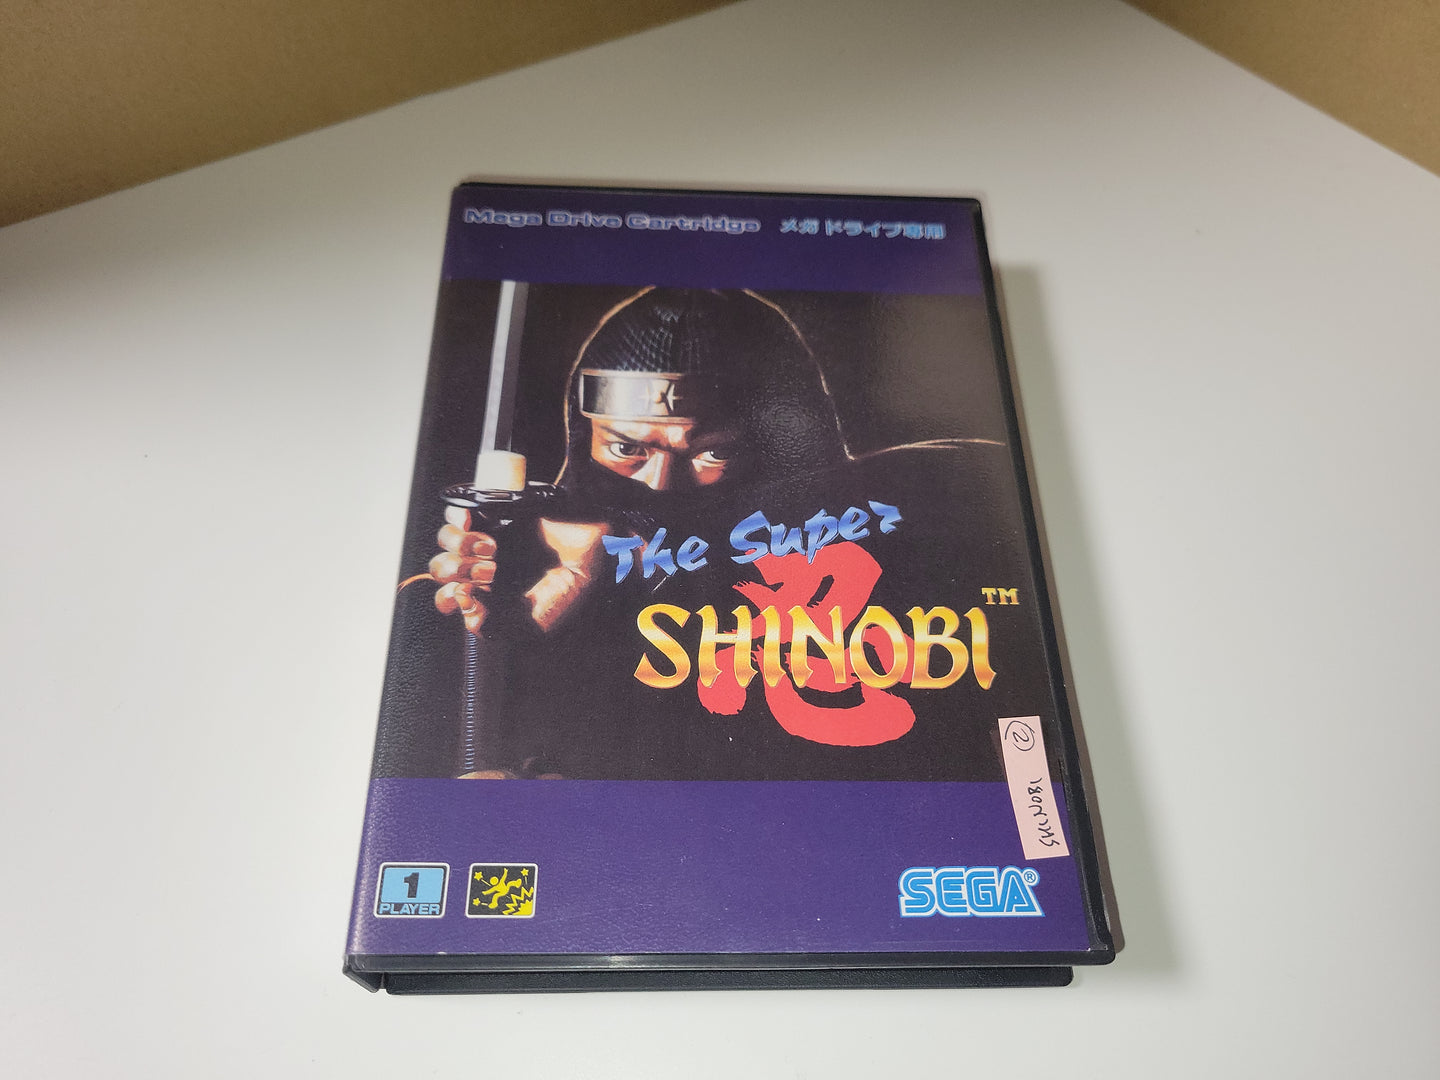 The Super Shinobi - Sega MD MegaDrive